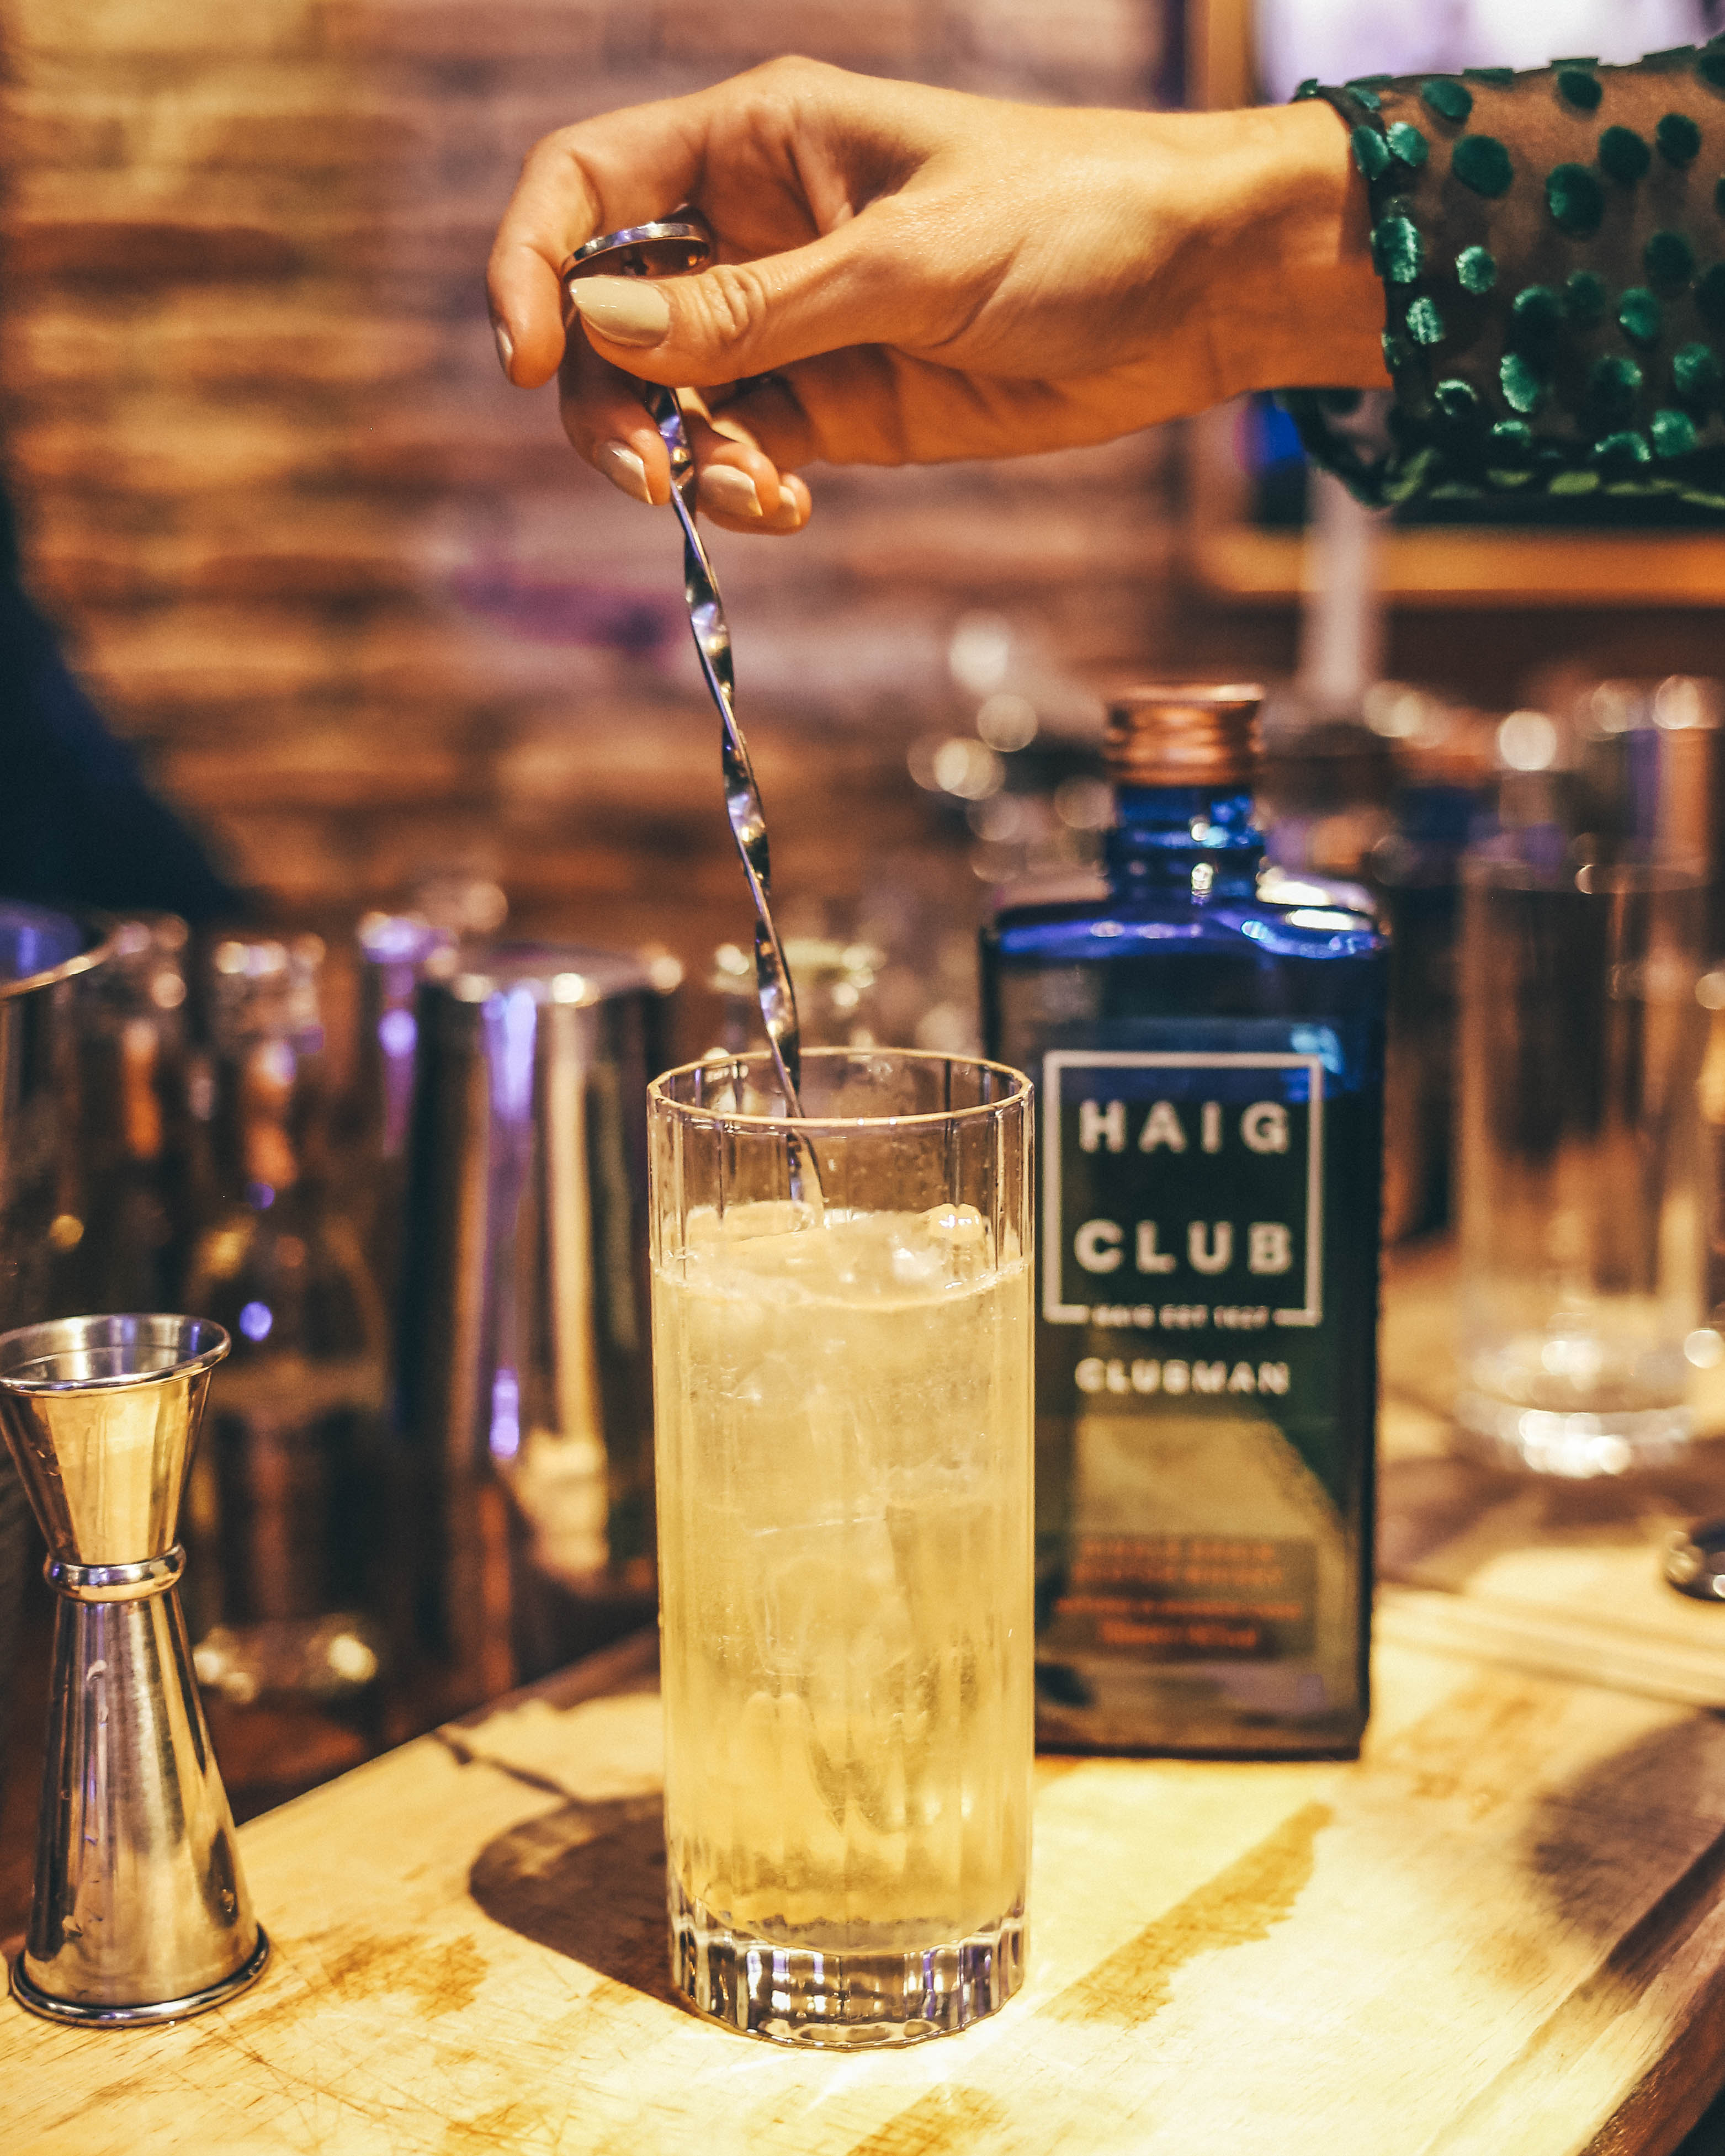 Haig club cocktails